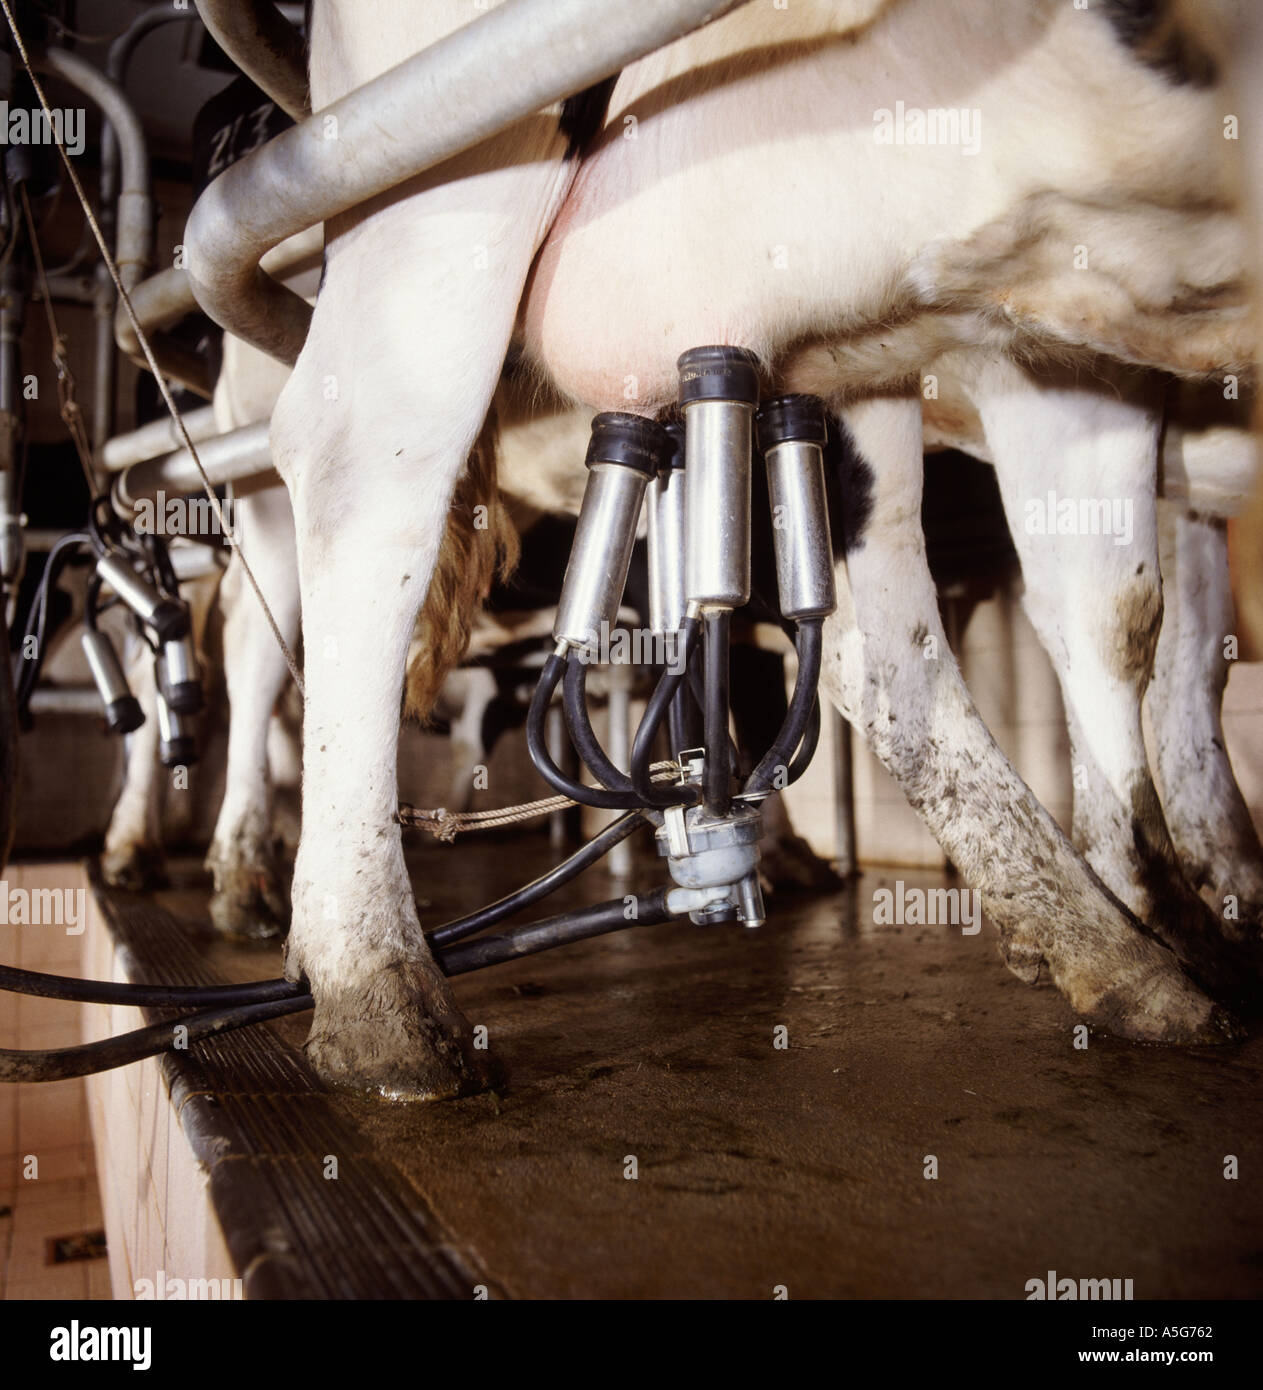 La máquina de ordeño cluster en la ubre de una vaca Holstein Friesian en lácteos Foto de stock